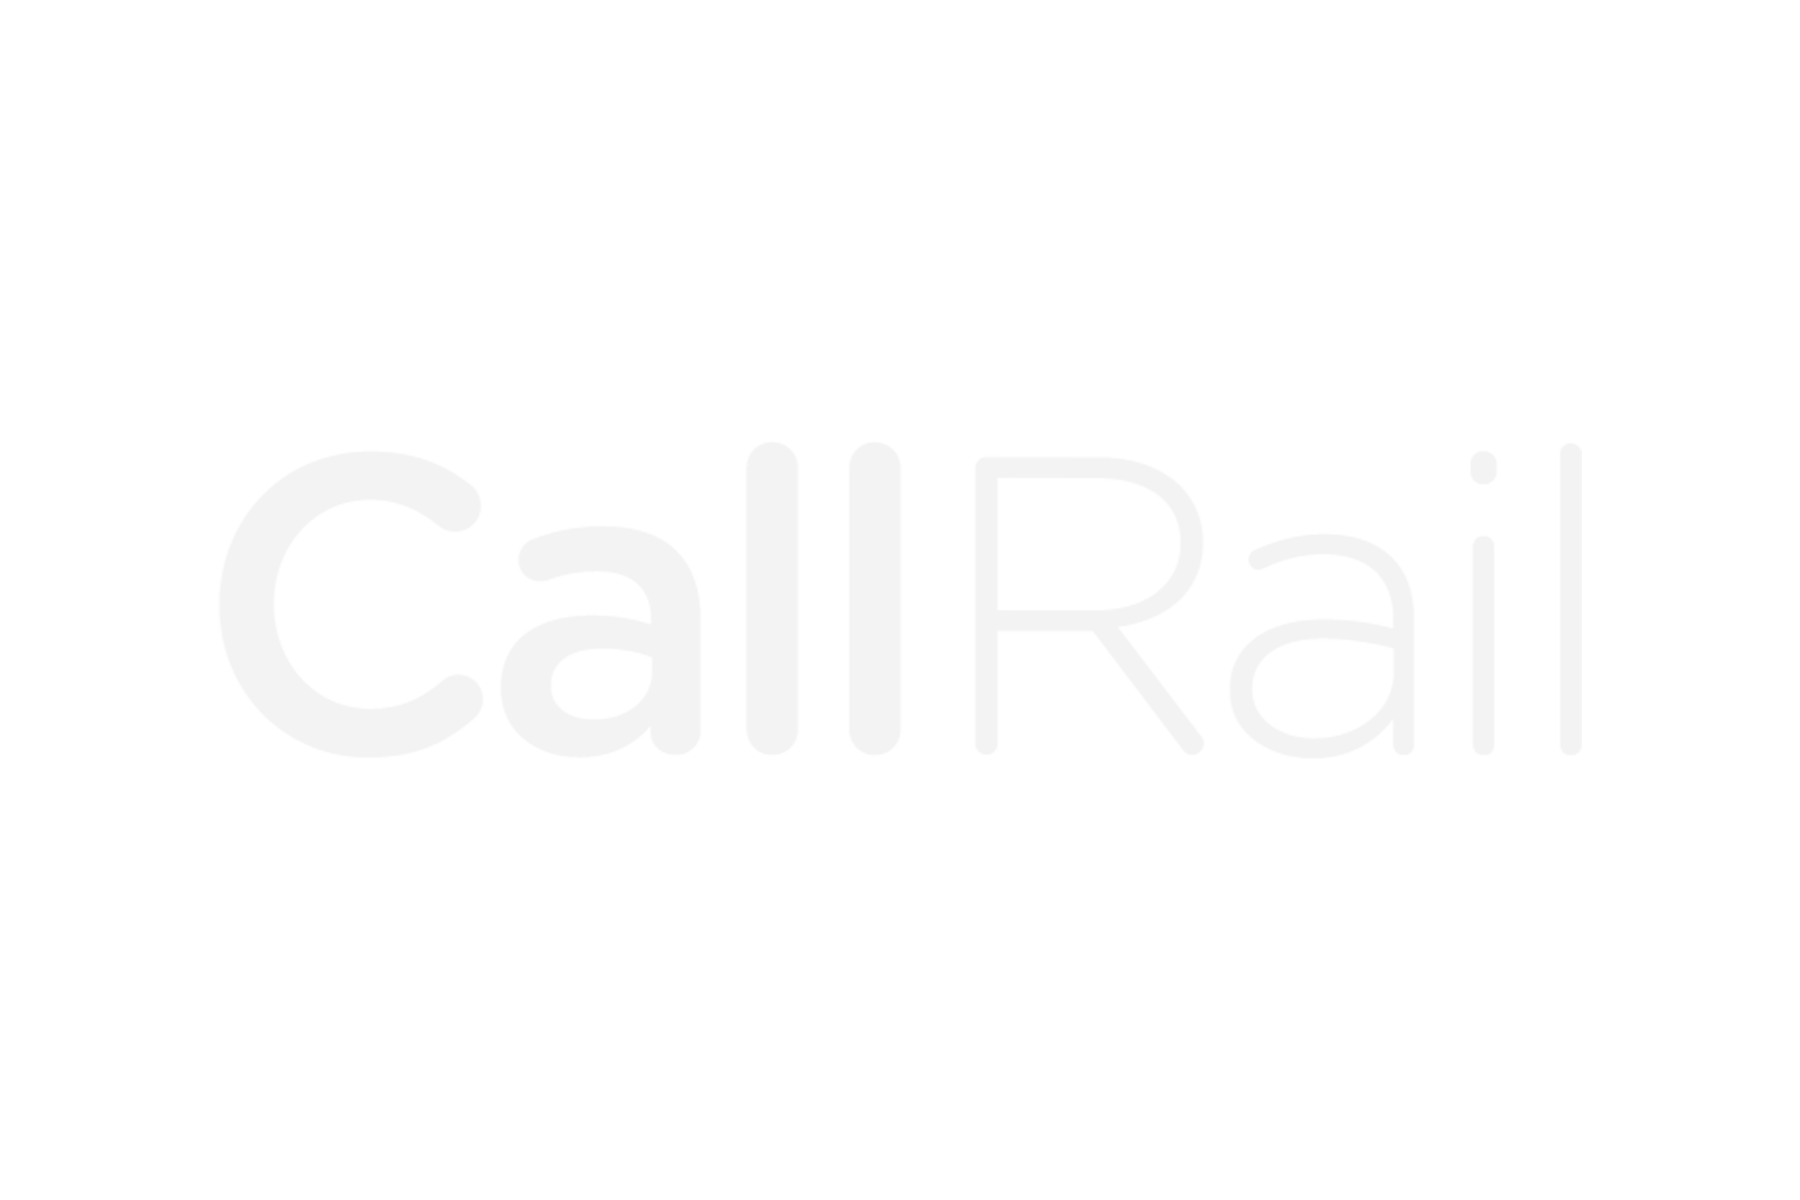 Call Rail